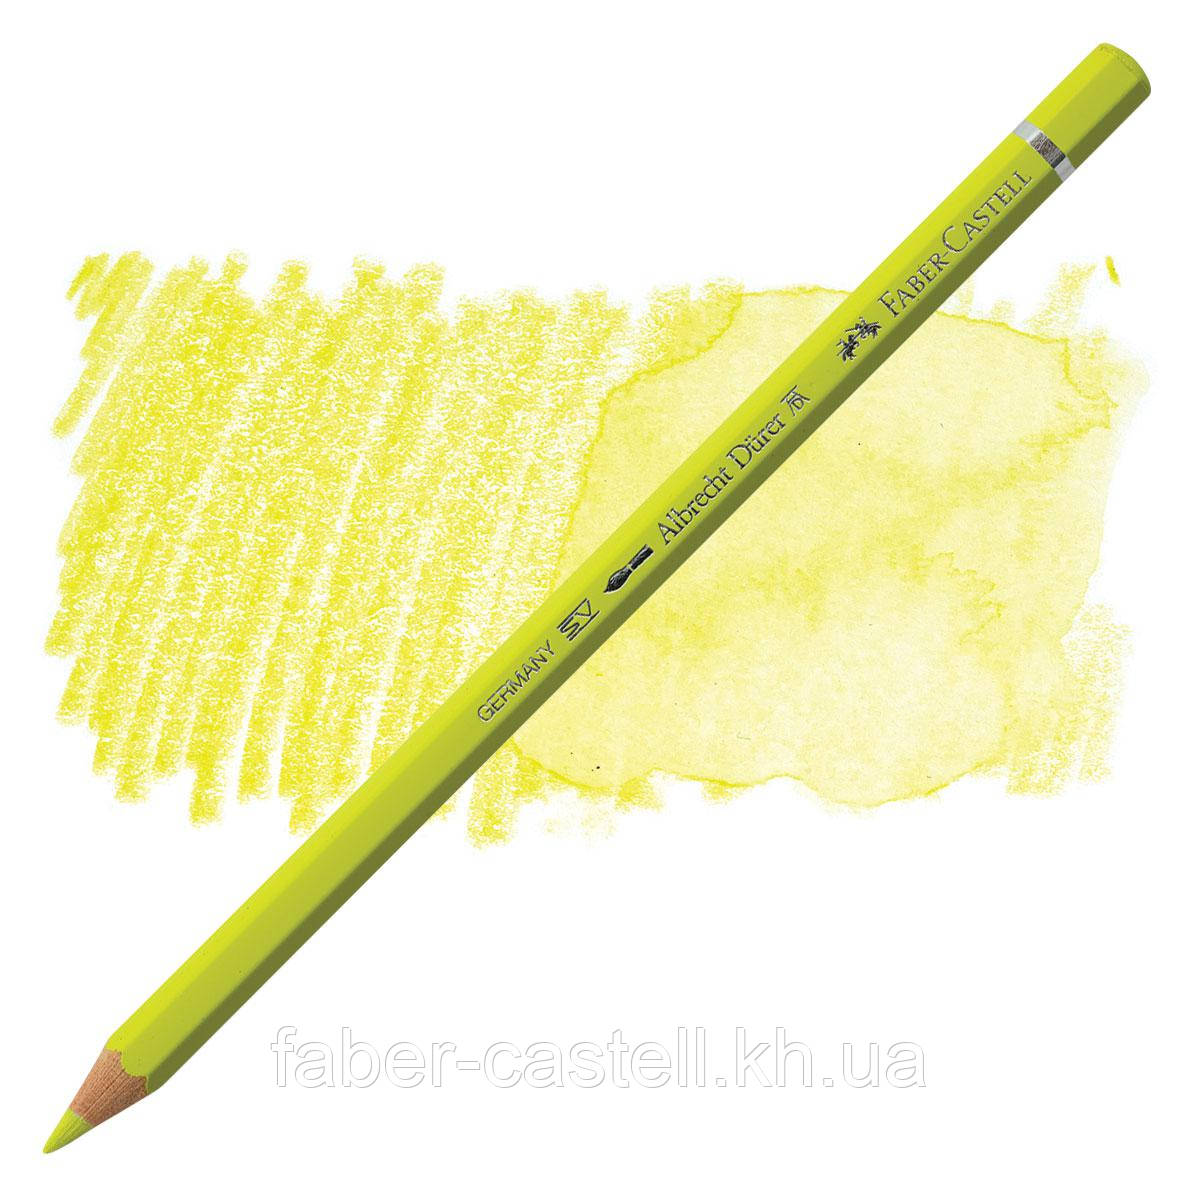 Олівець акварельний кольоровий Faber-Castell A. Dürer кадмієвий лимонний жовтий (Cadmium Yellow Lemon) №205